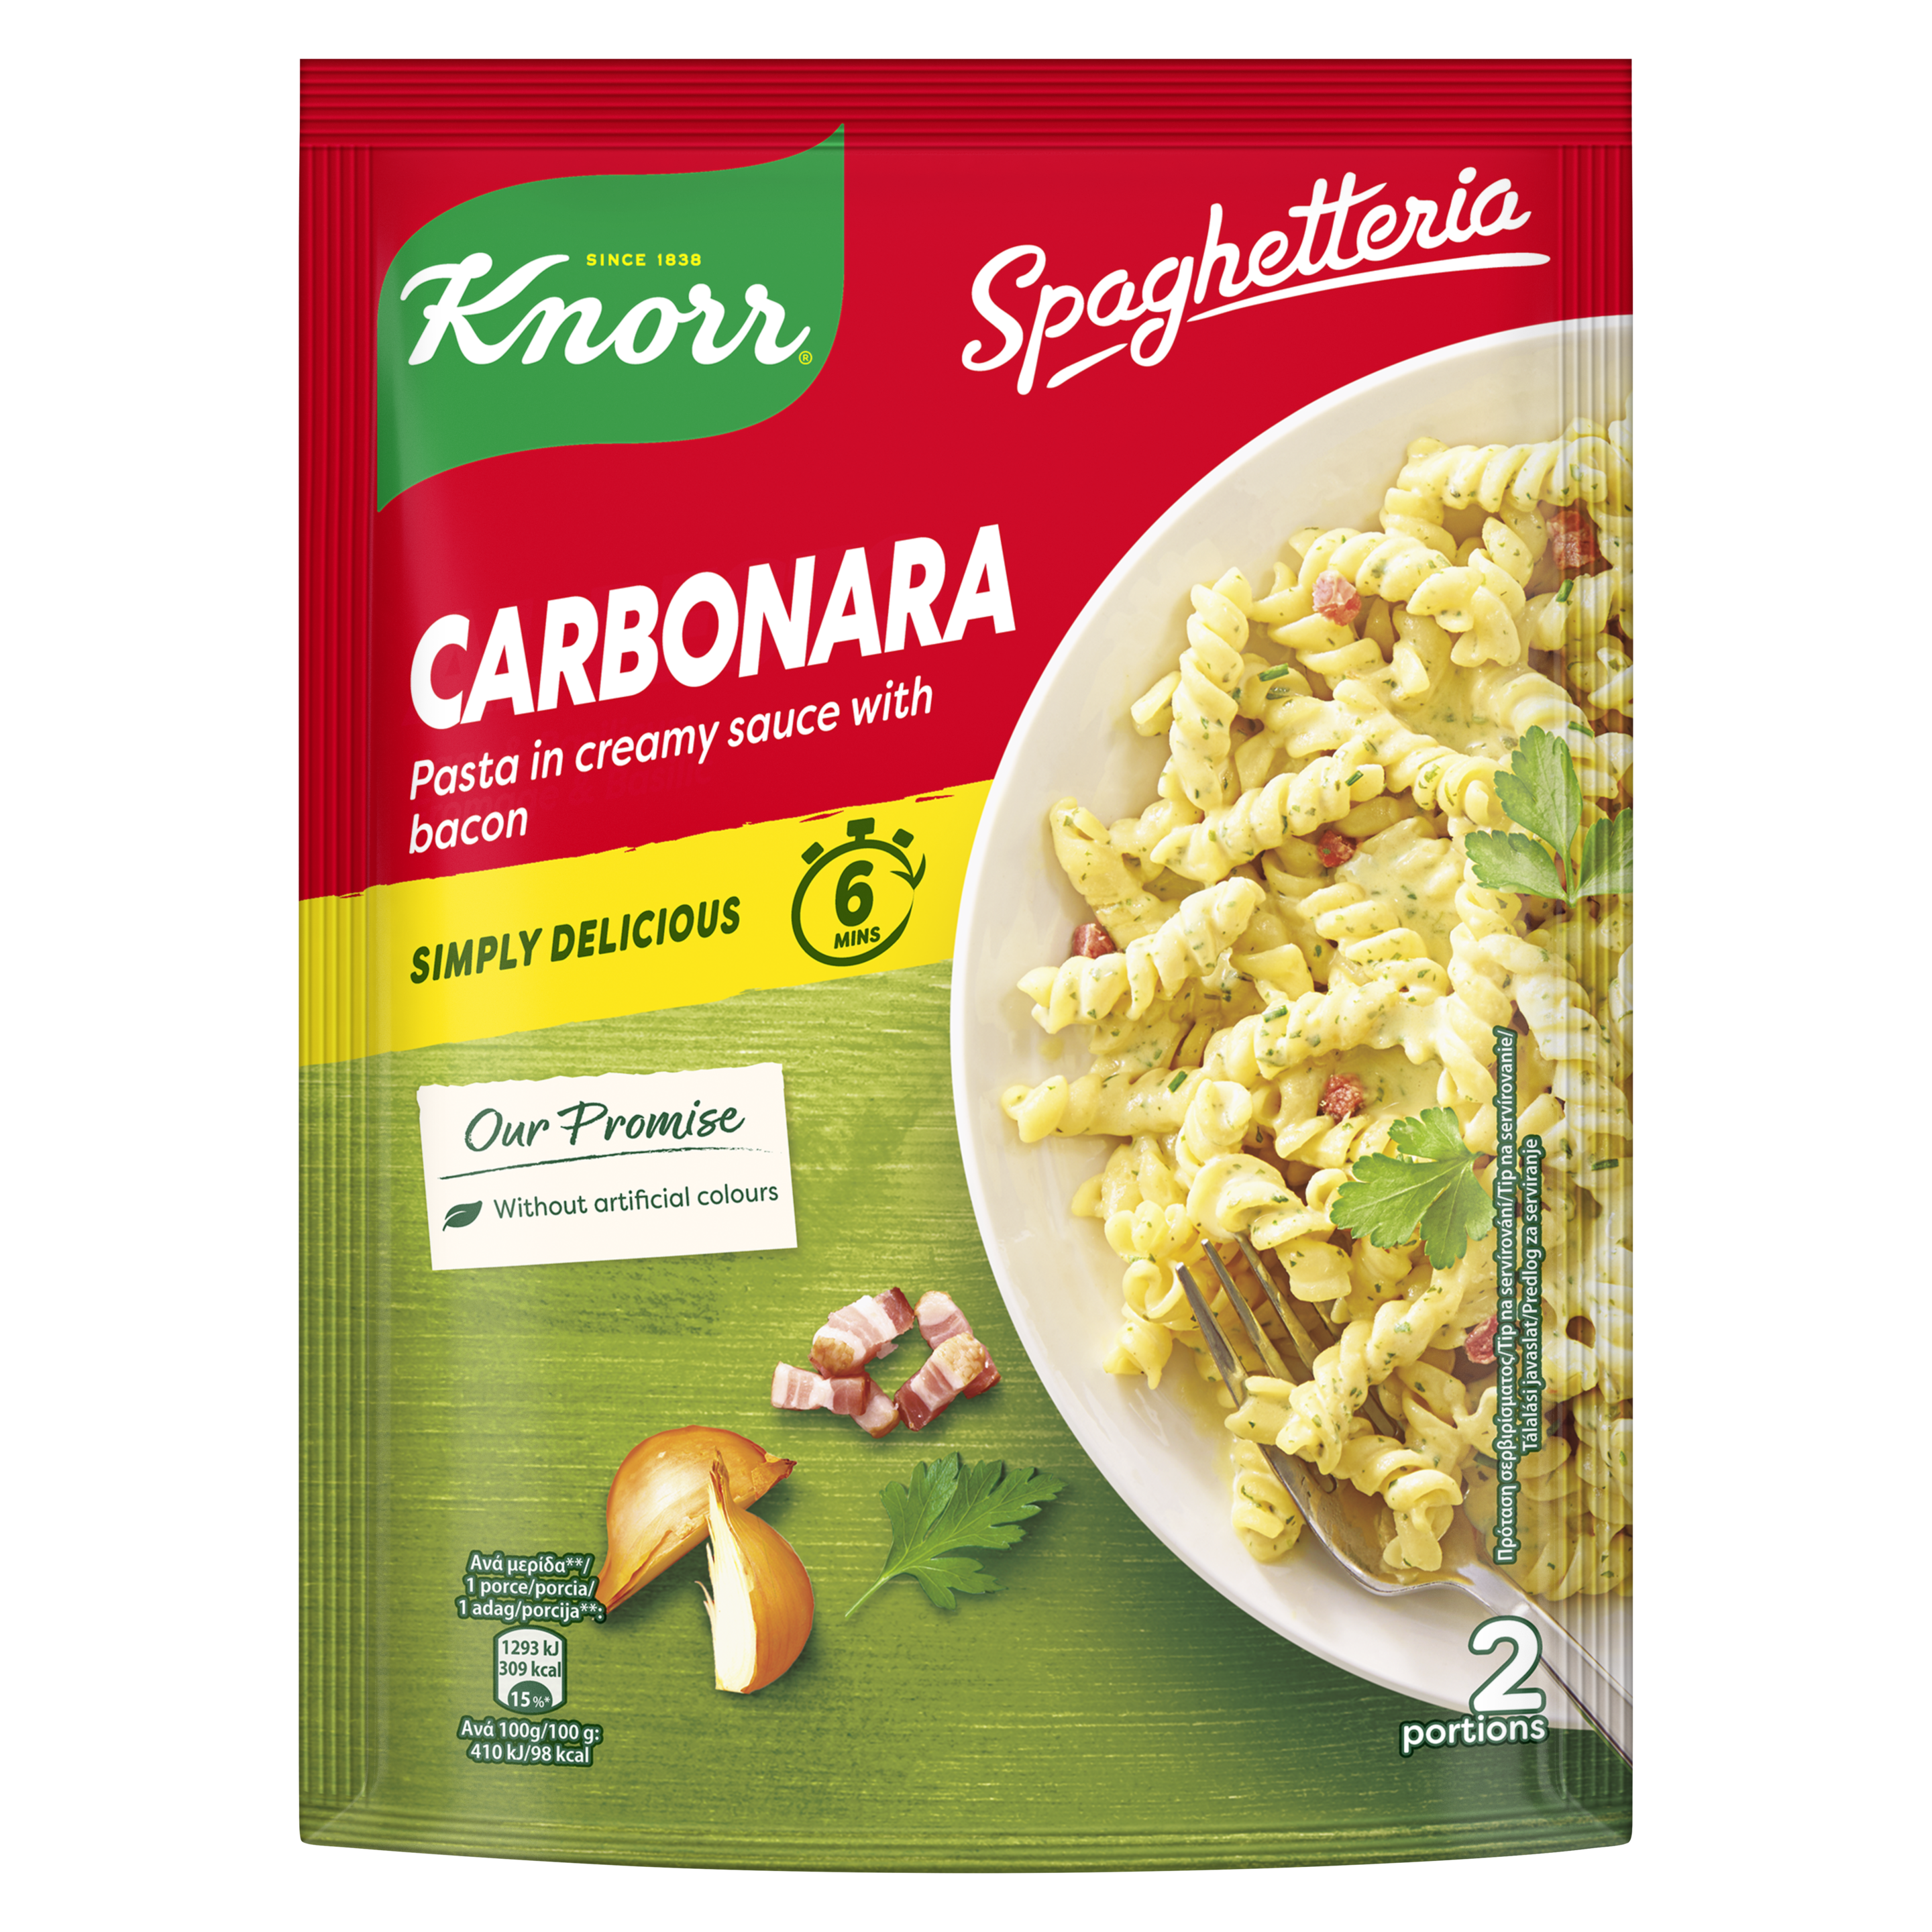 Κnorr Spaghetteria Carbonara